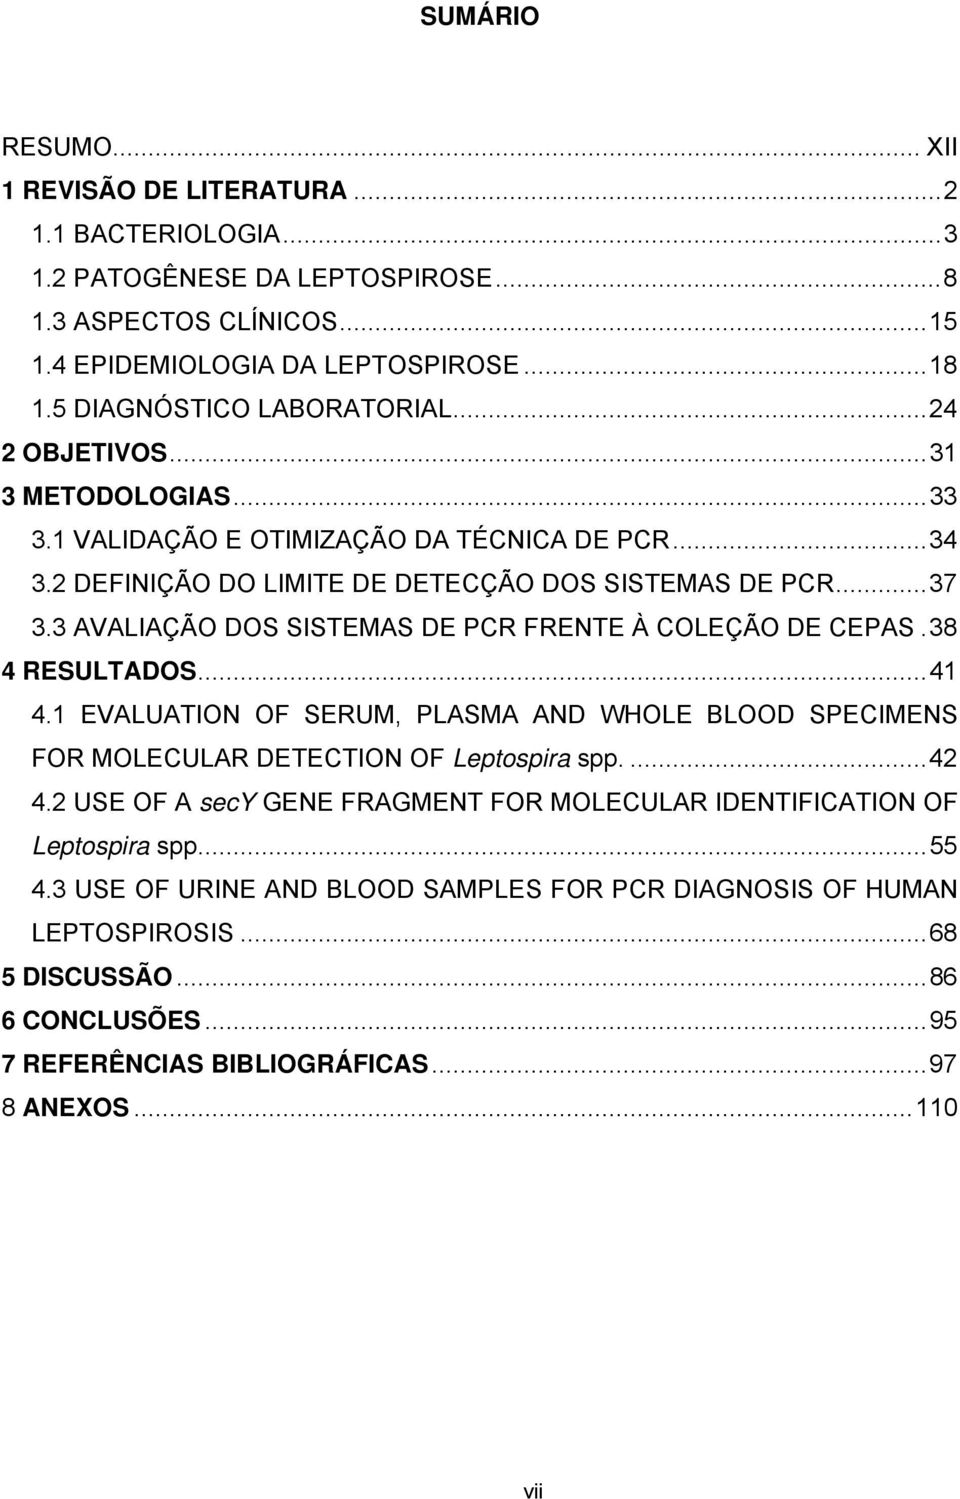 3 AVALIAÇÃO DOS SISTEMAS DE PCR FRENTE À COLEÇÃO DE CEPAS.38 4 RESULTADOS...41 4.1 EVALUATION OF SERUM, PLASMA AND WHOLE BLOOD SPECIMENS FOR MOLECULAR DETECTION OF Leptospira spp....42 4.